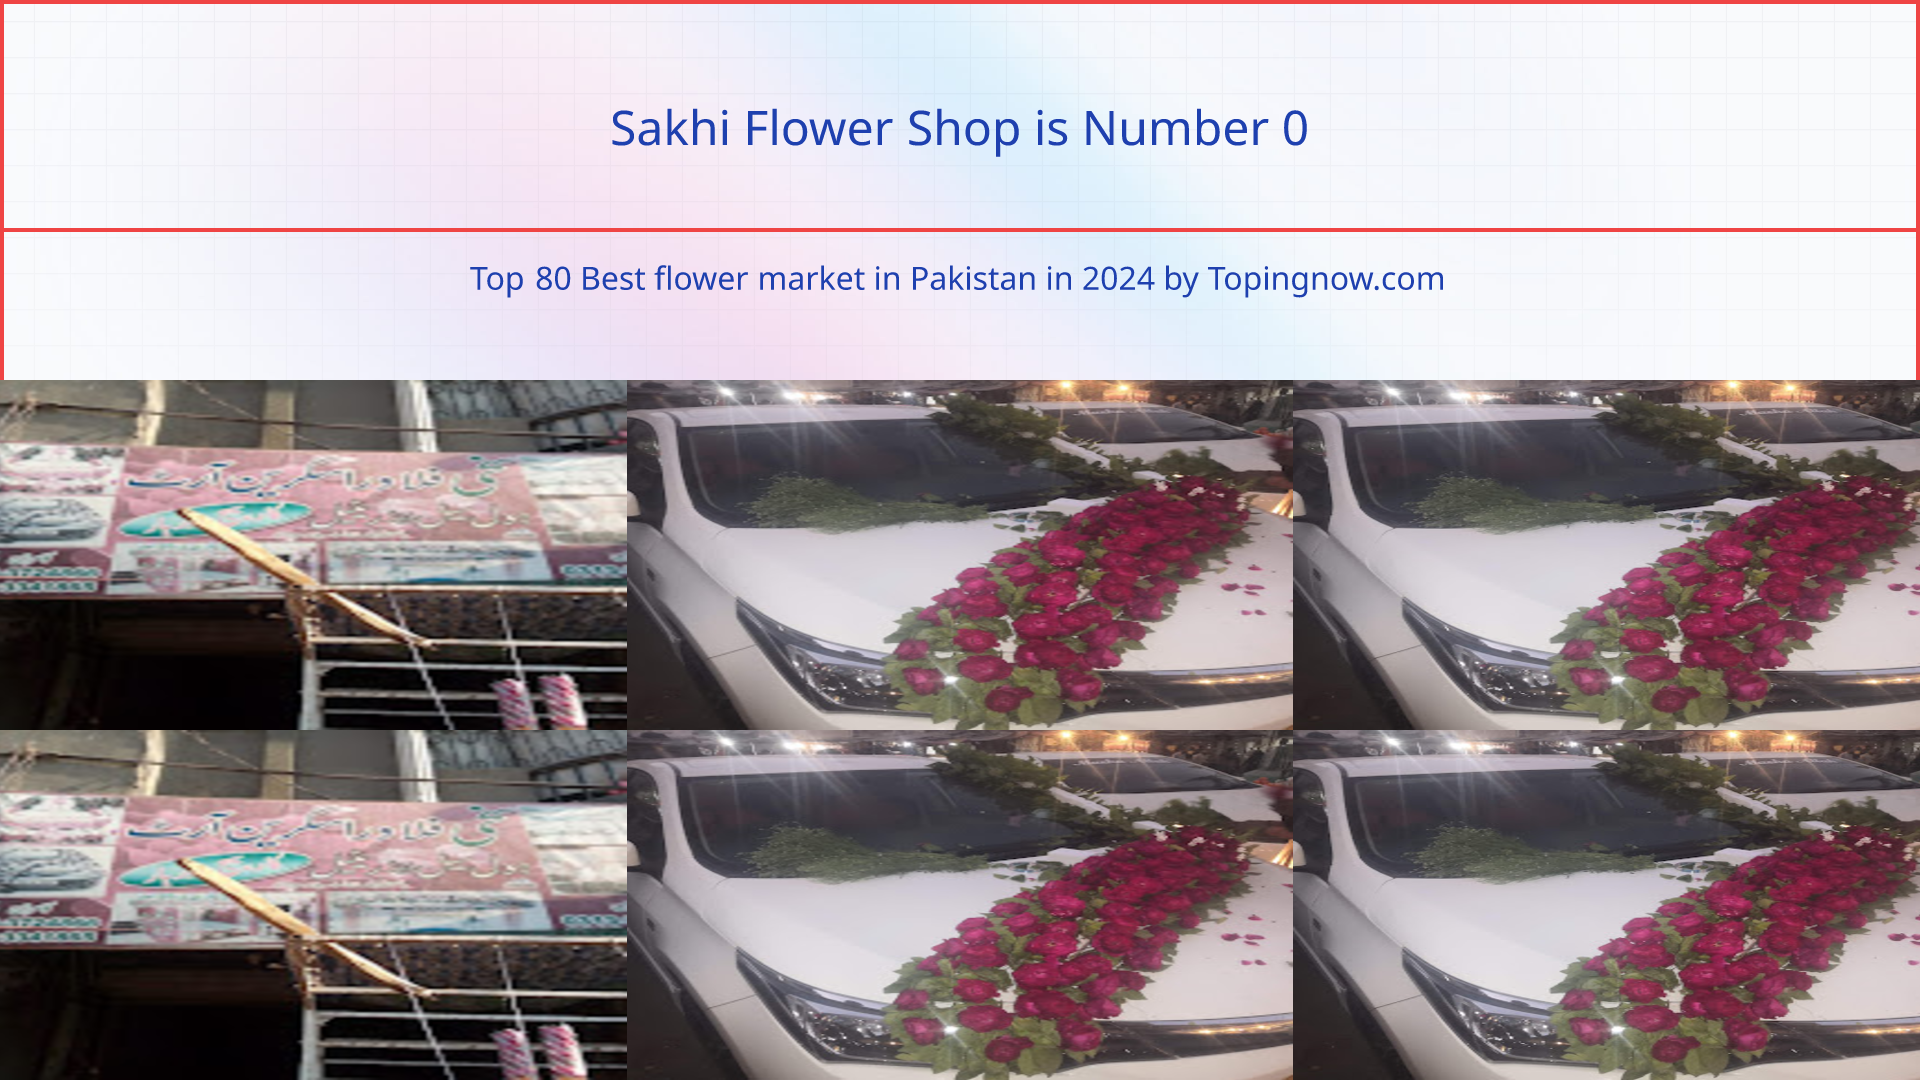 Sakhi Flower Shop: Top 80 Best flower market in Pakistan in 2024